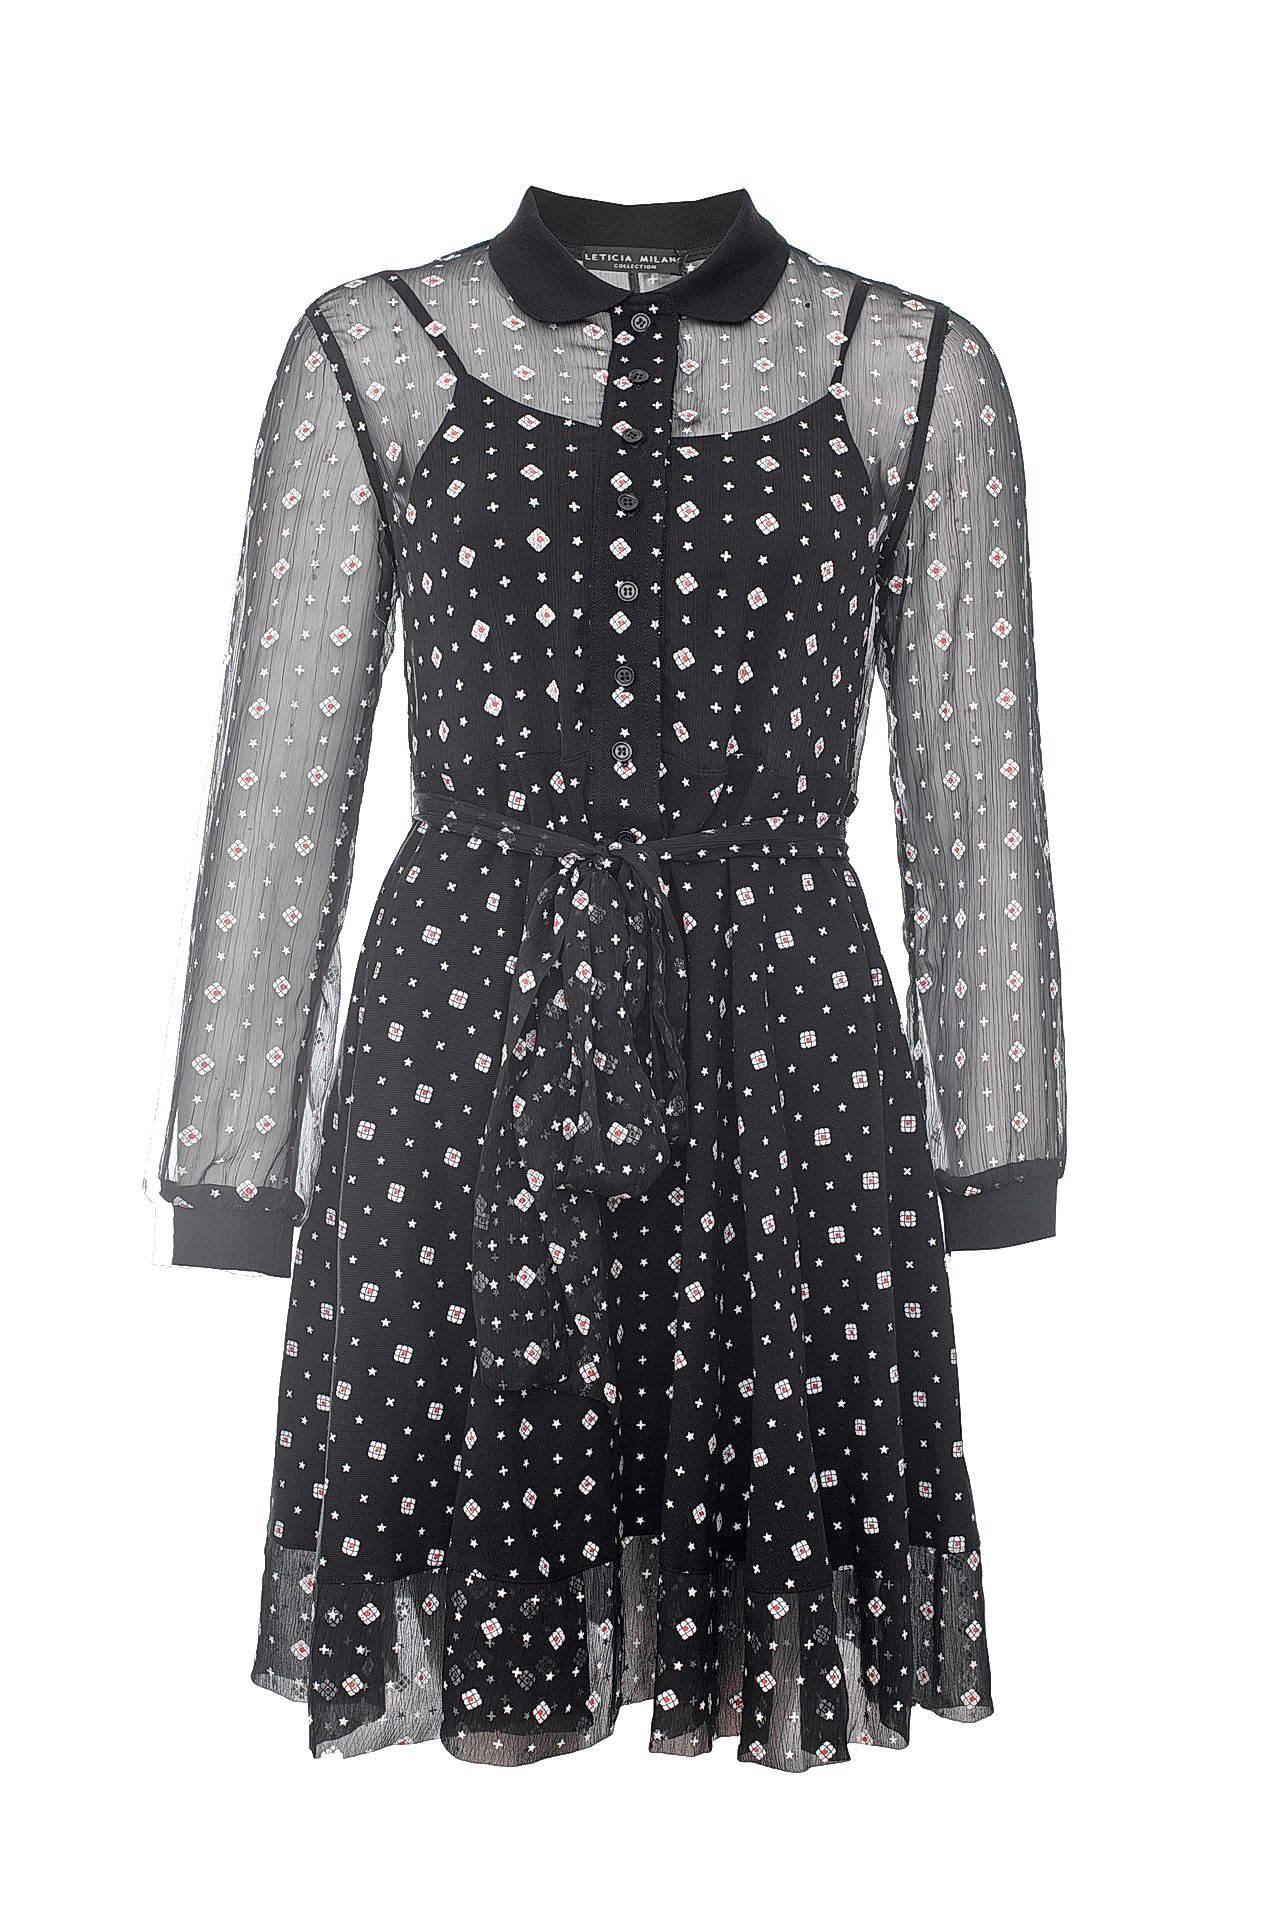 Одежда женская Платье LETICIA MILANO (APG4600/17.2). Купить за 9030 руб.